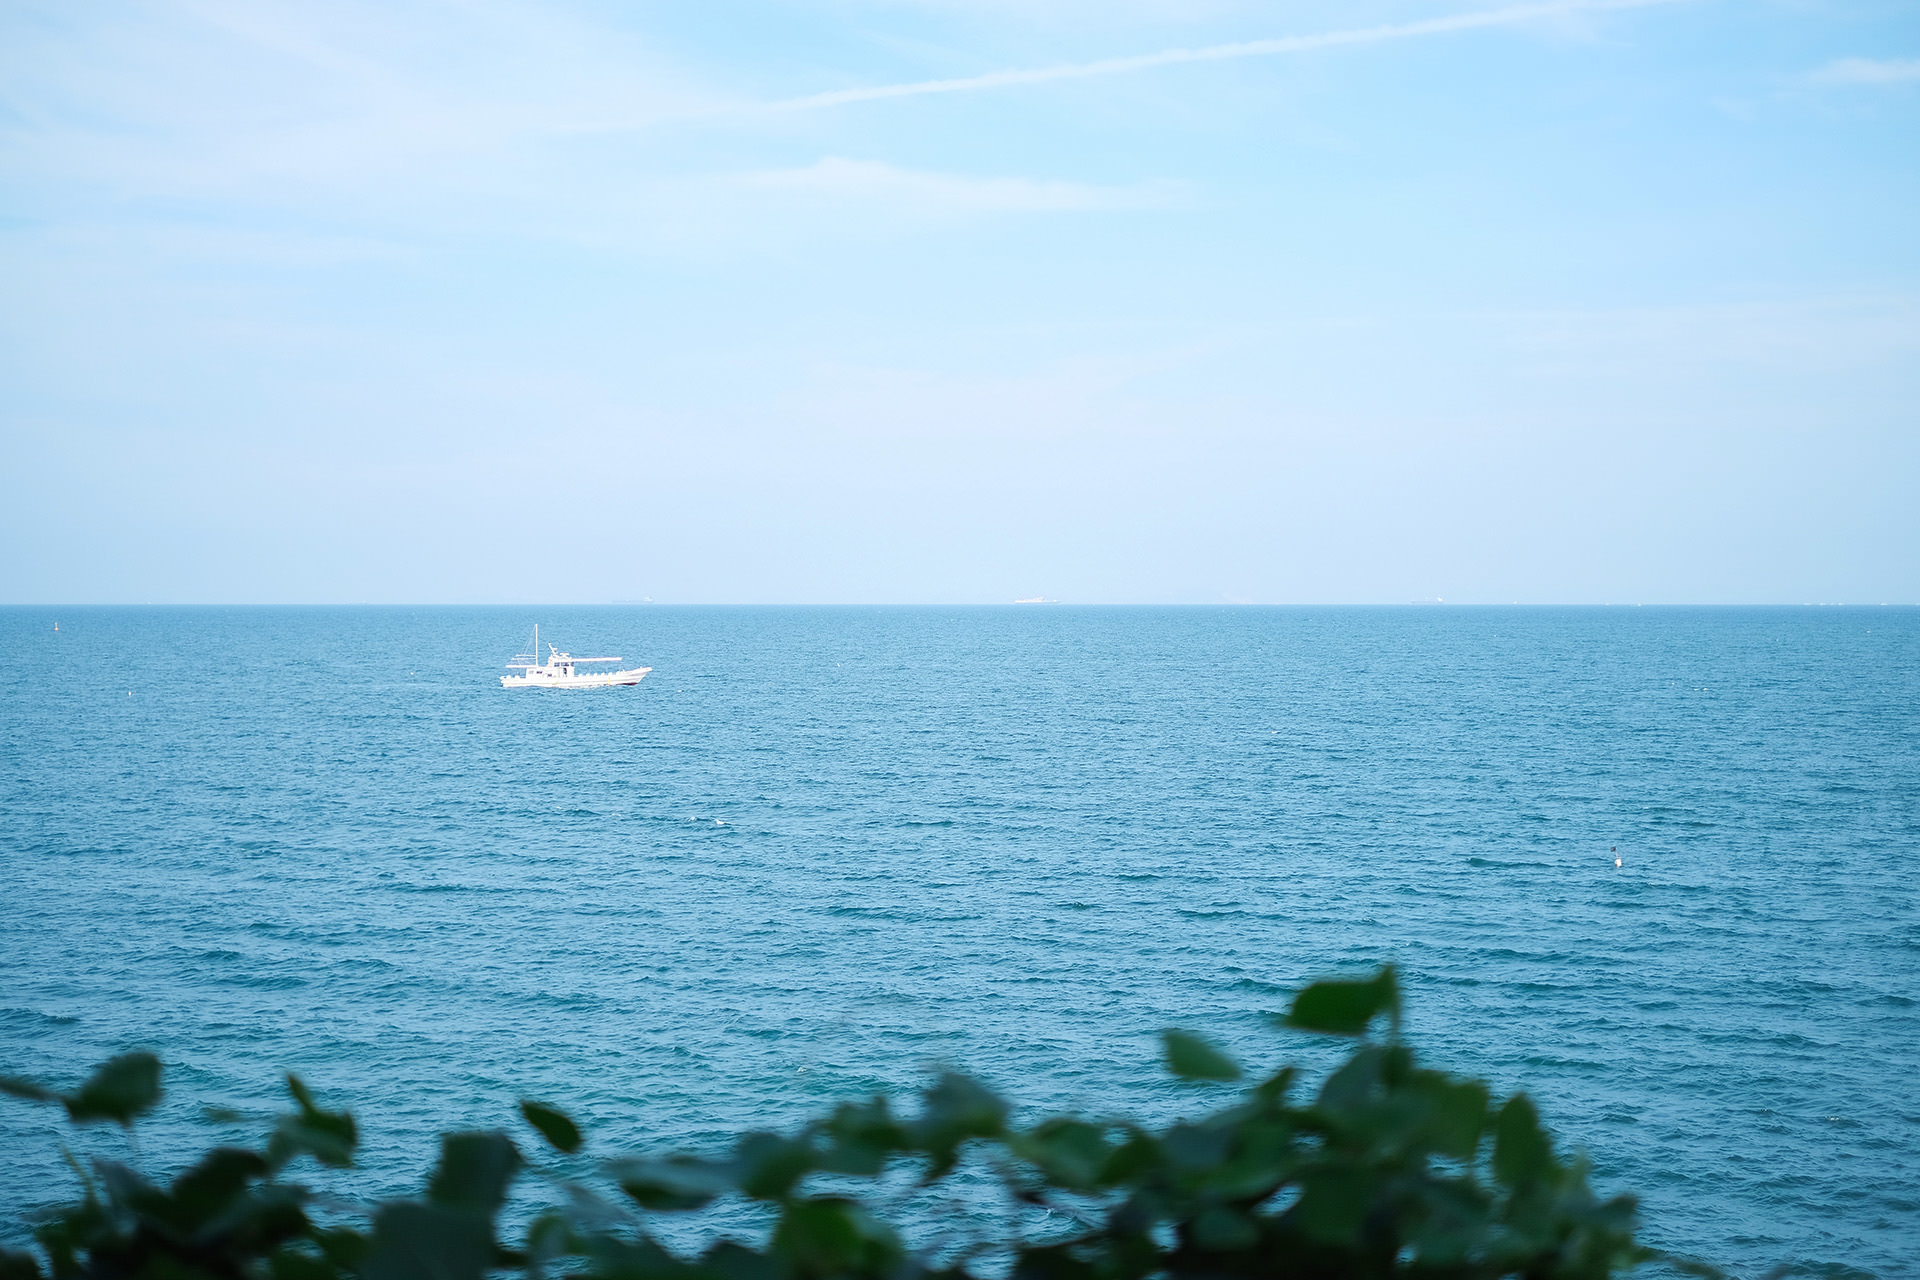 青い海に、1隻の白い漁船が見える風景。手前には、つる植物の葉が茂っている。